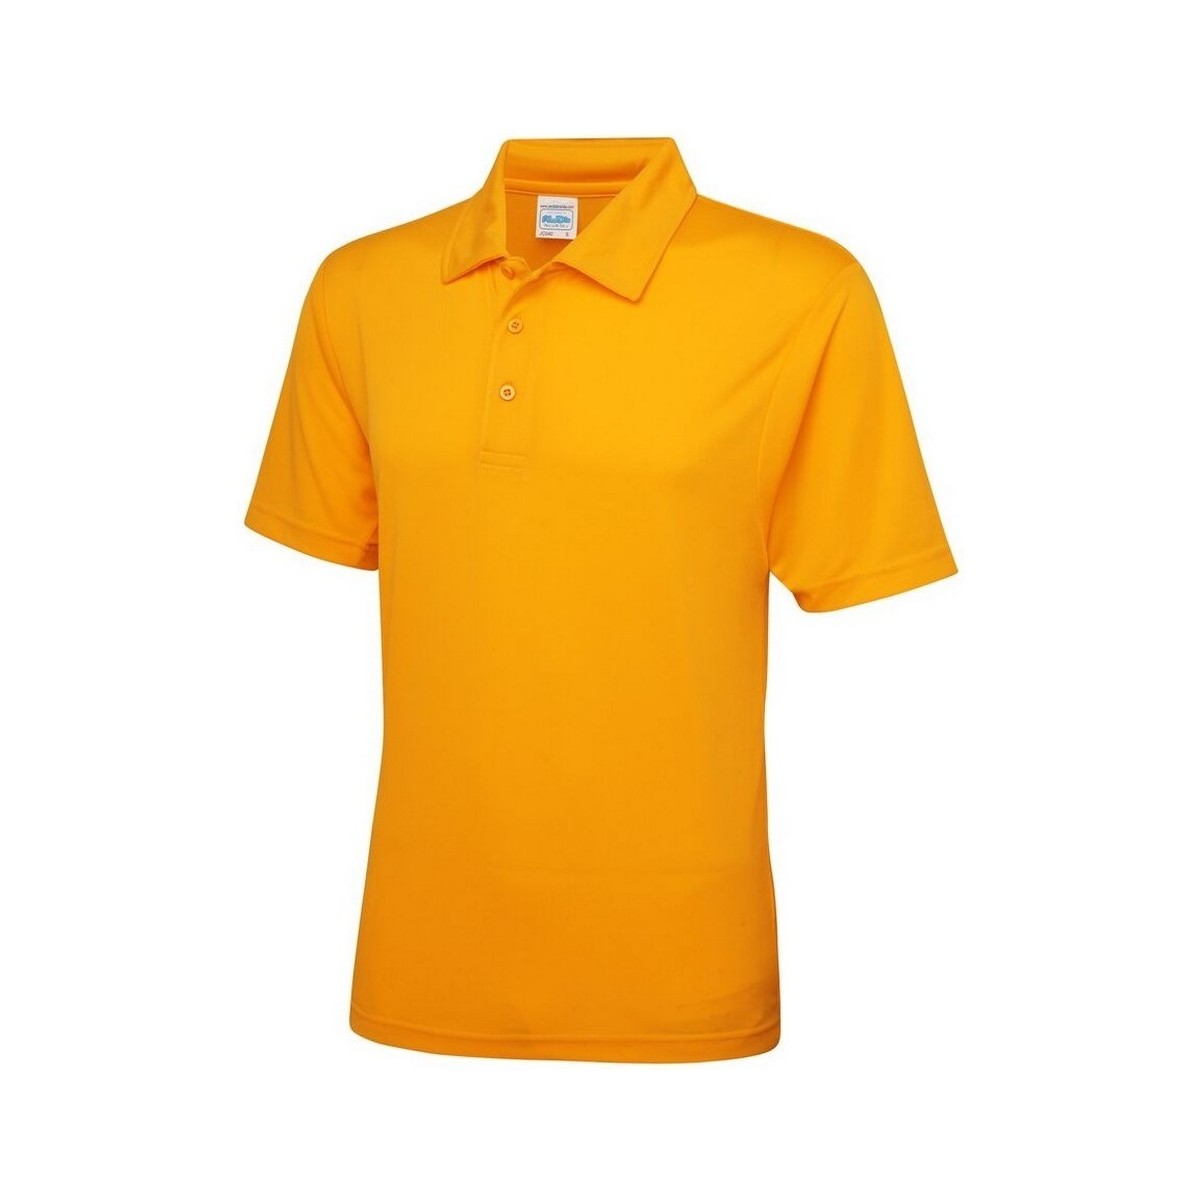 textil Hombre Tops y Camisetas Awdis JC040 Multicolor